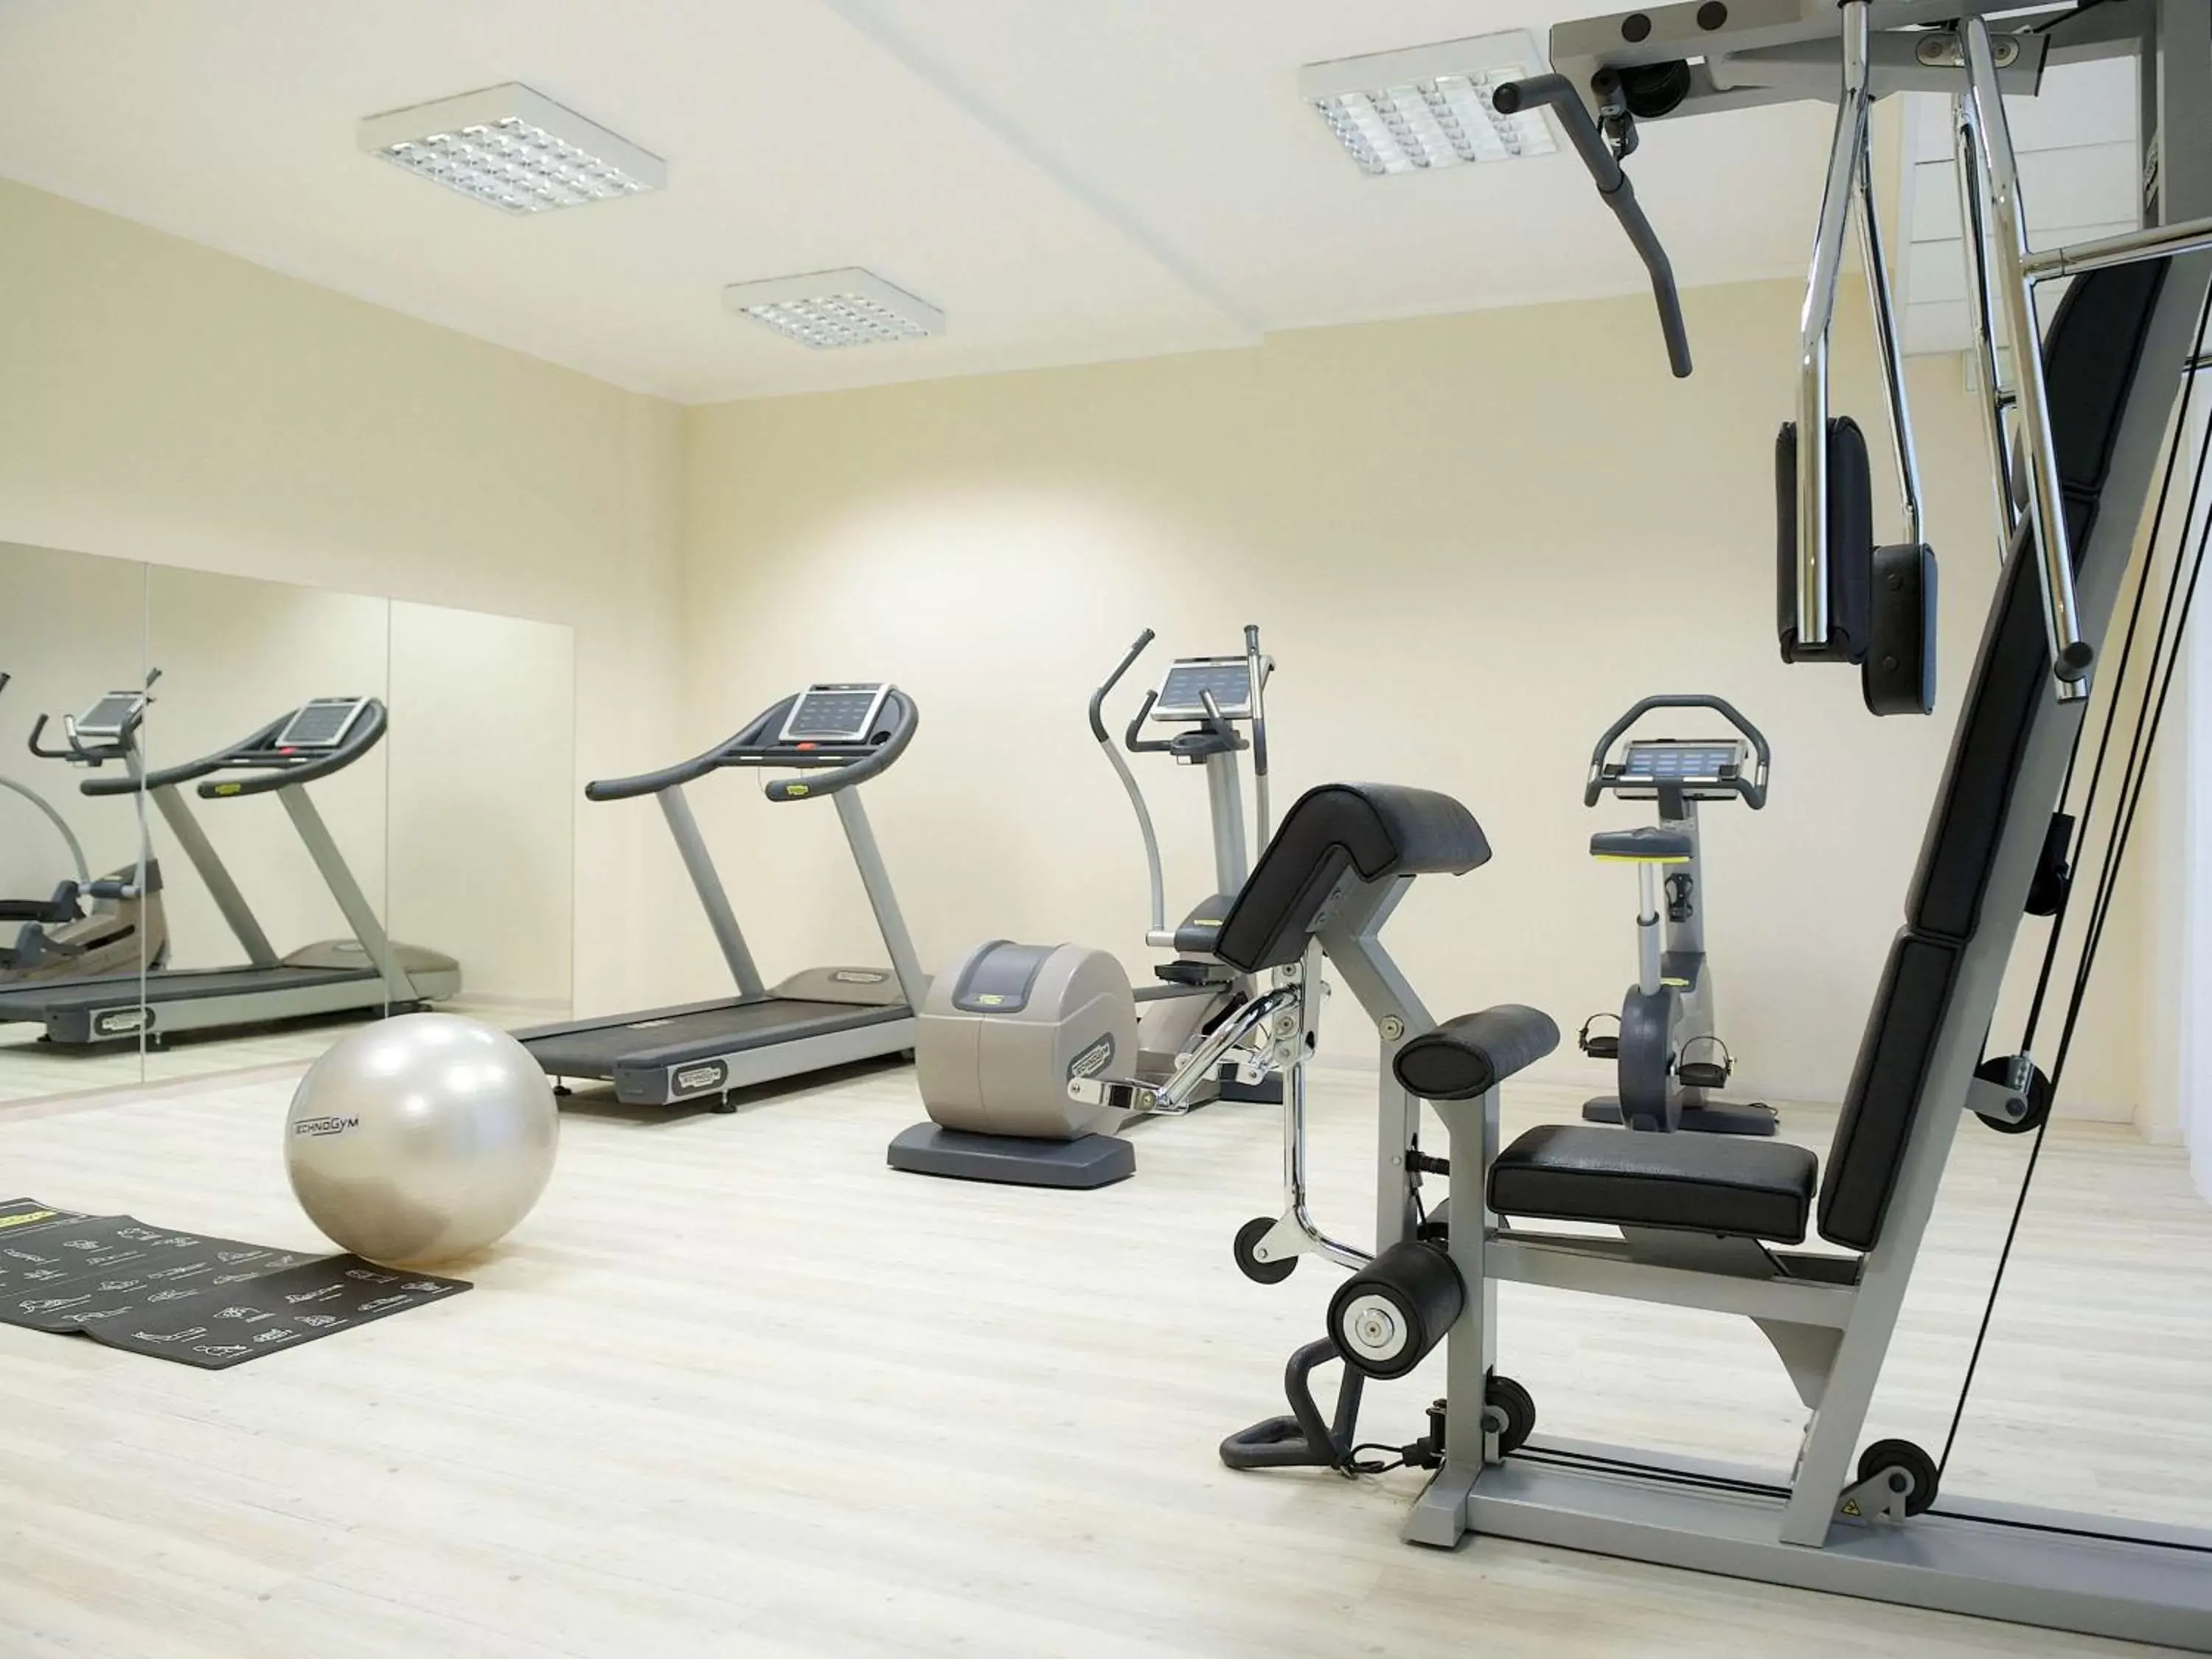 Fitness centre/facilities, Fitness Center/Facilities in Mercure Bergamo Aeroporto